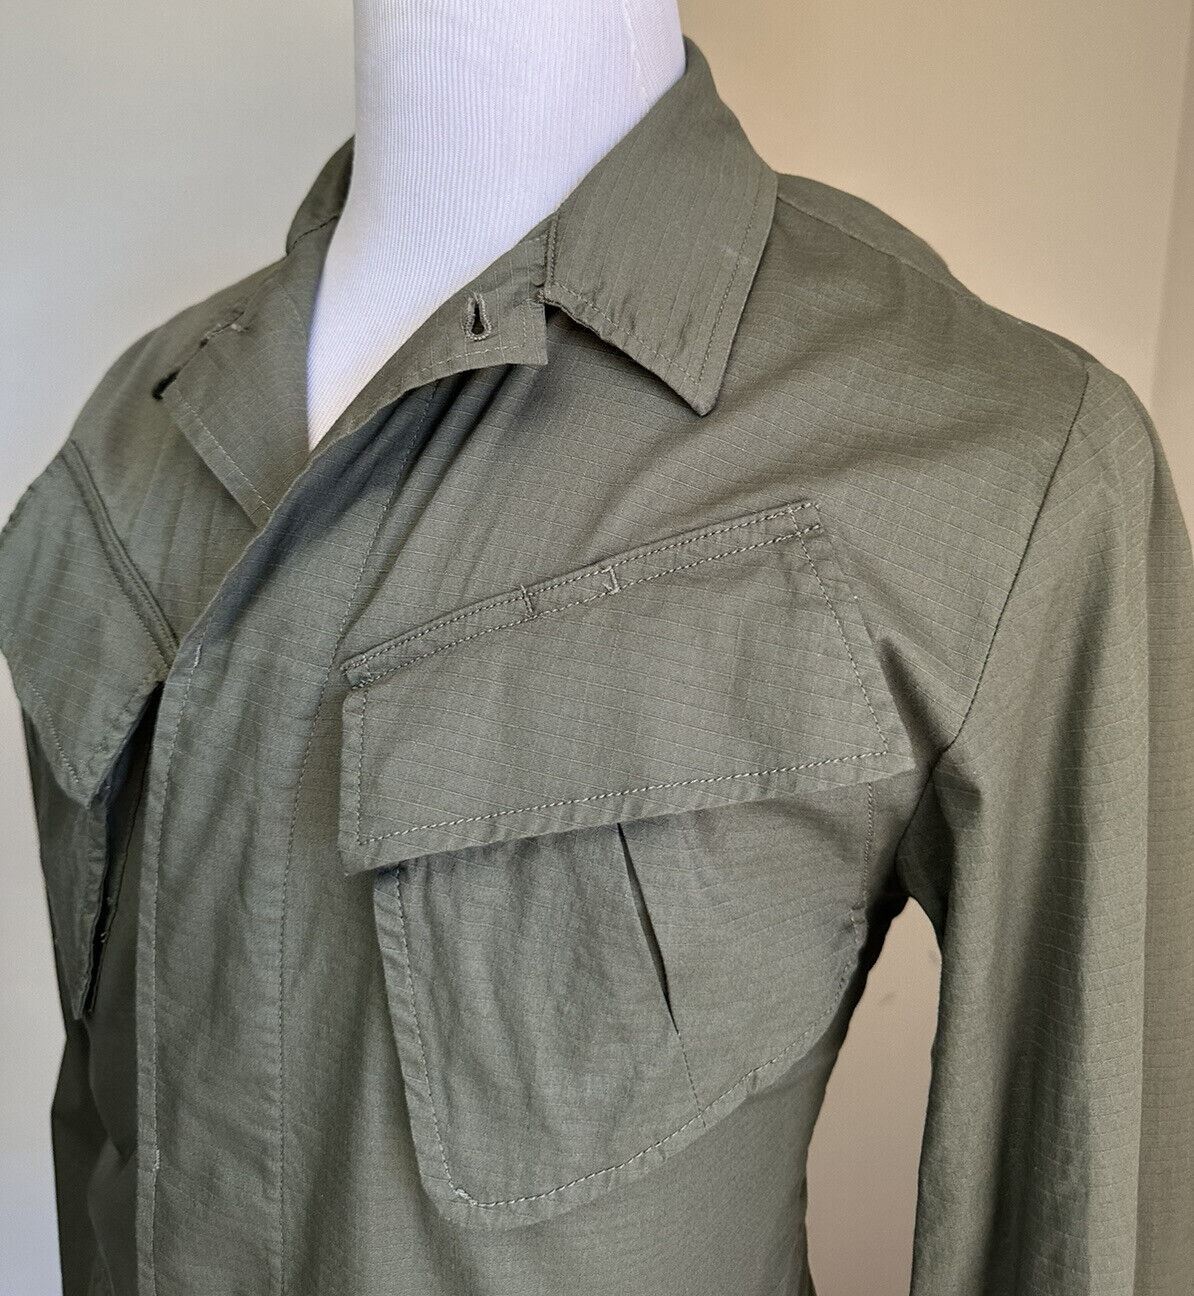 Новая мужская куртка Polo Ralph Lauren в стиле джунглей, новый оливковый размер 44 США/54 ЕС